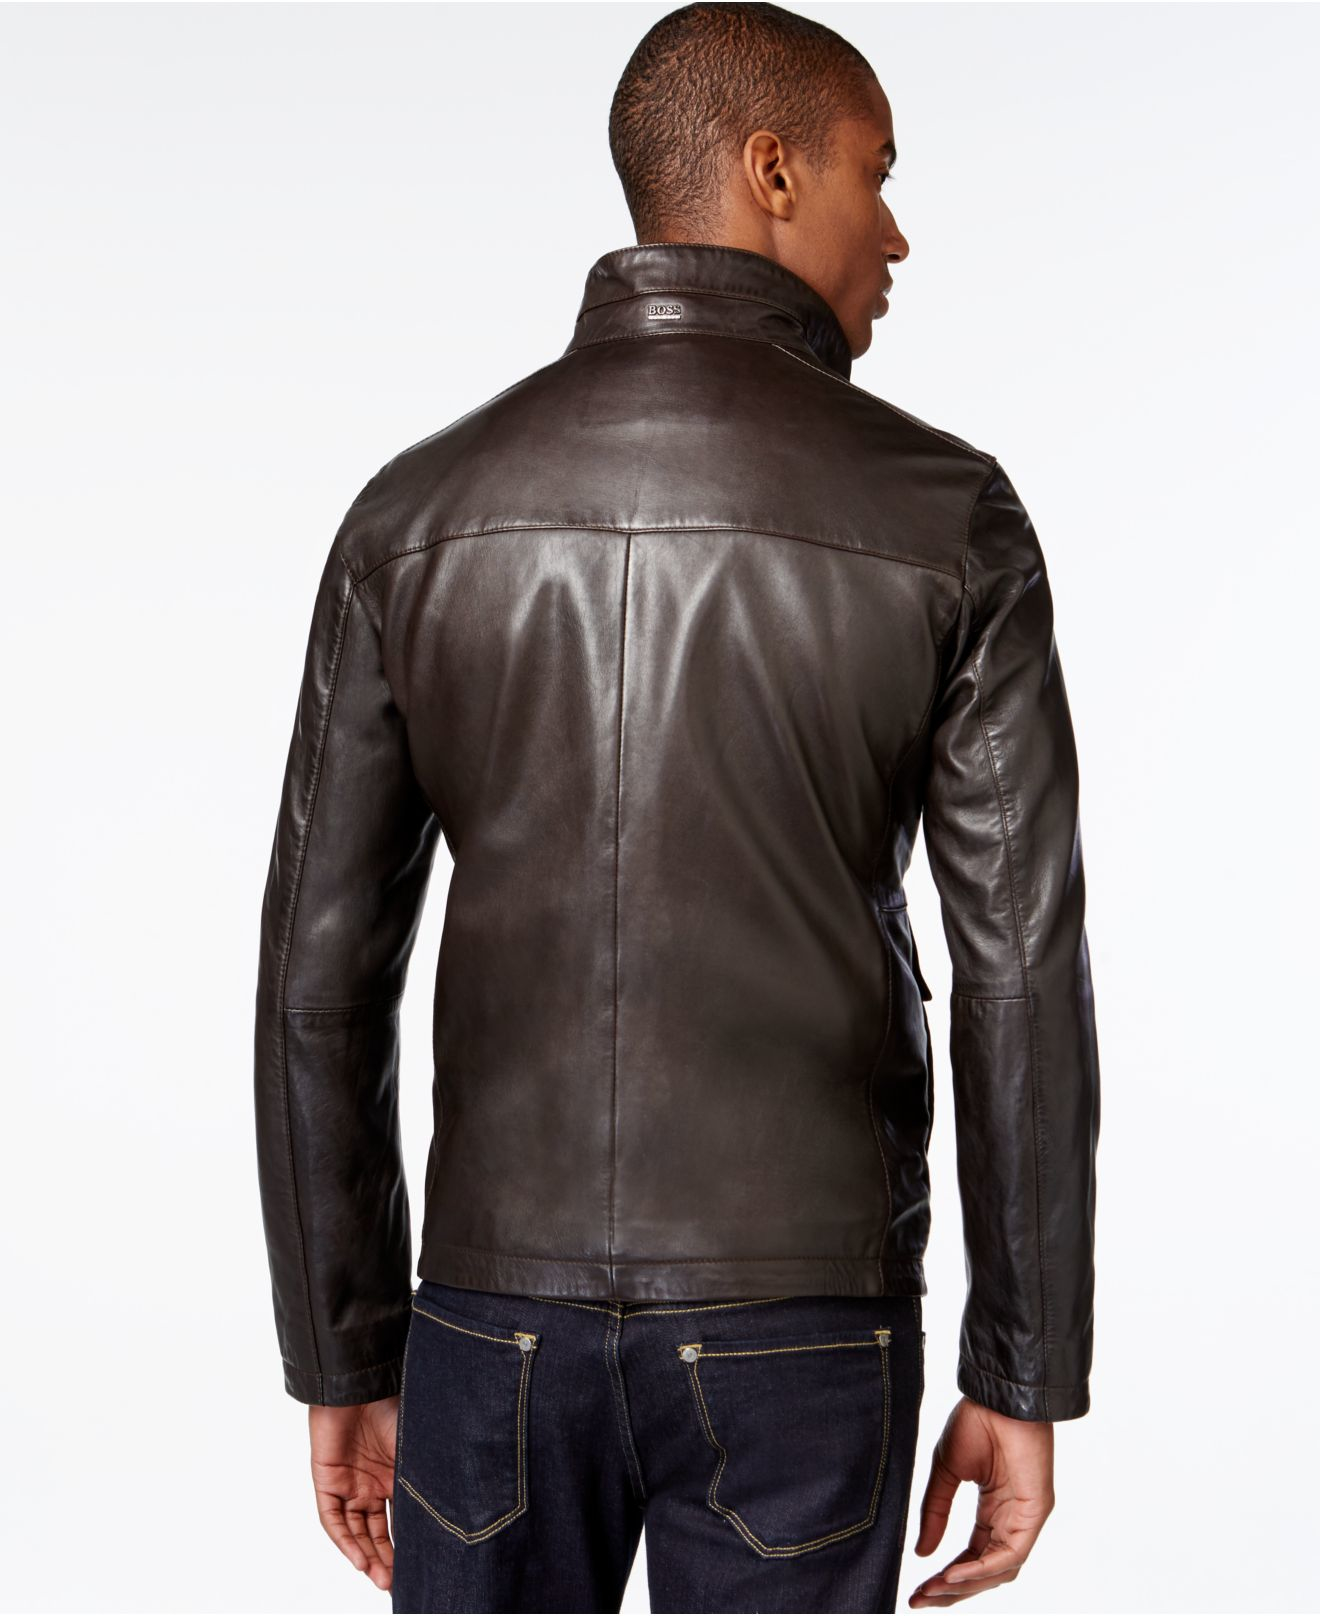 Hugo Boss Green Leather Jacket Cheap Sale, 55% OFF | ilikepinga.com